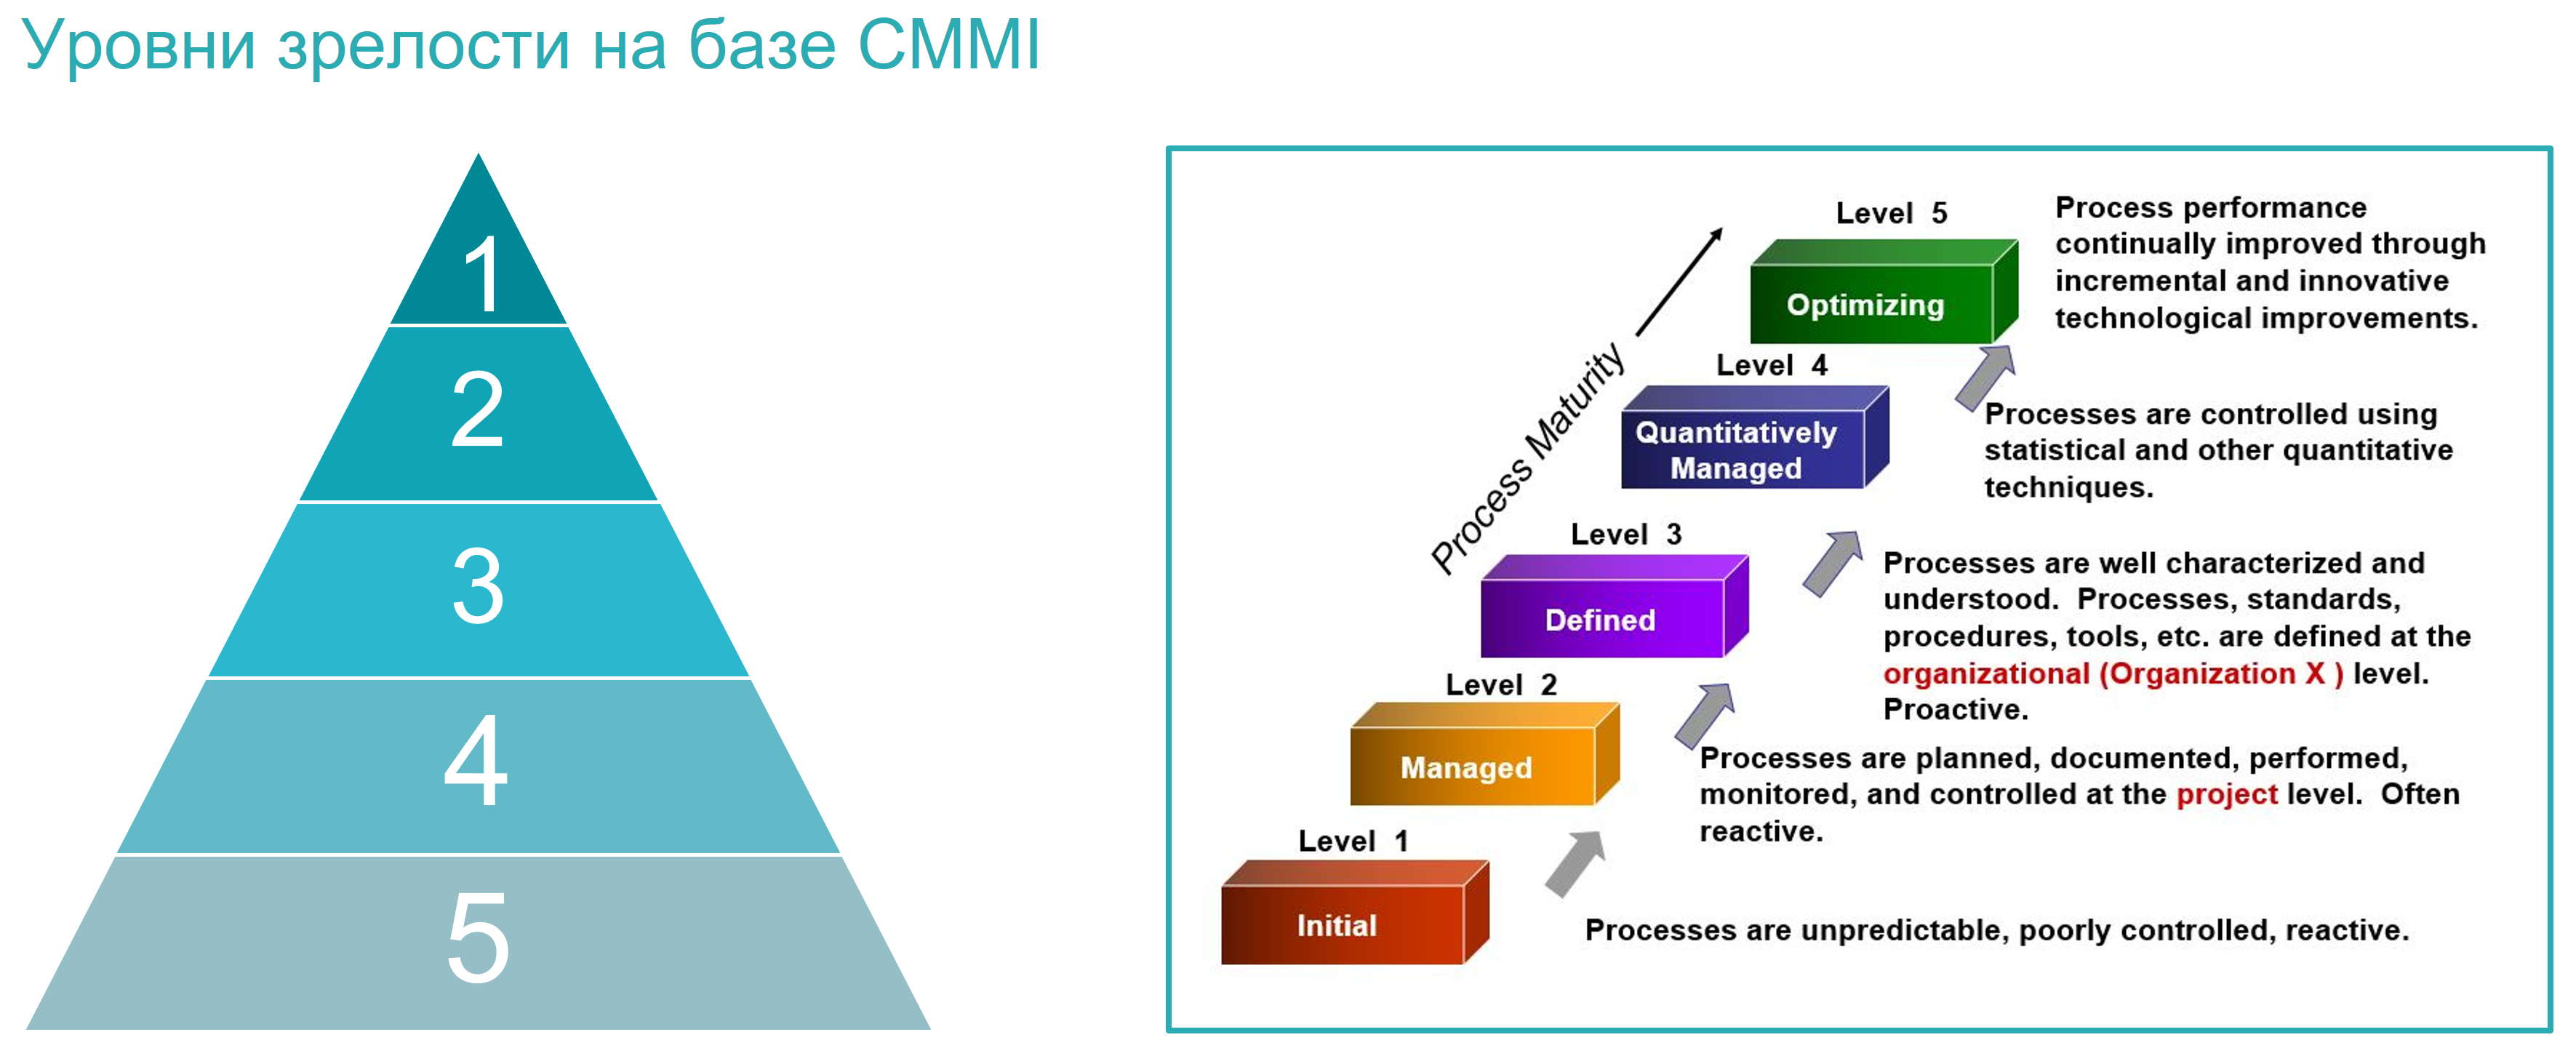 Уровни зрелости на базе CMMI